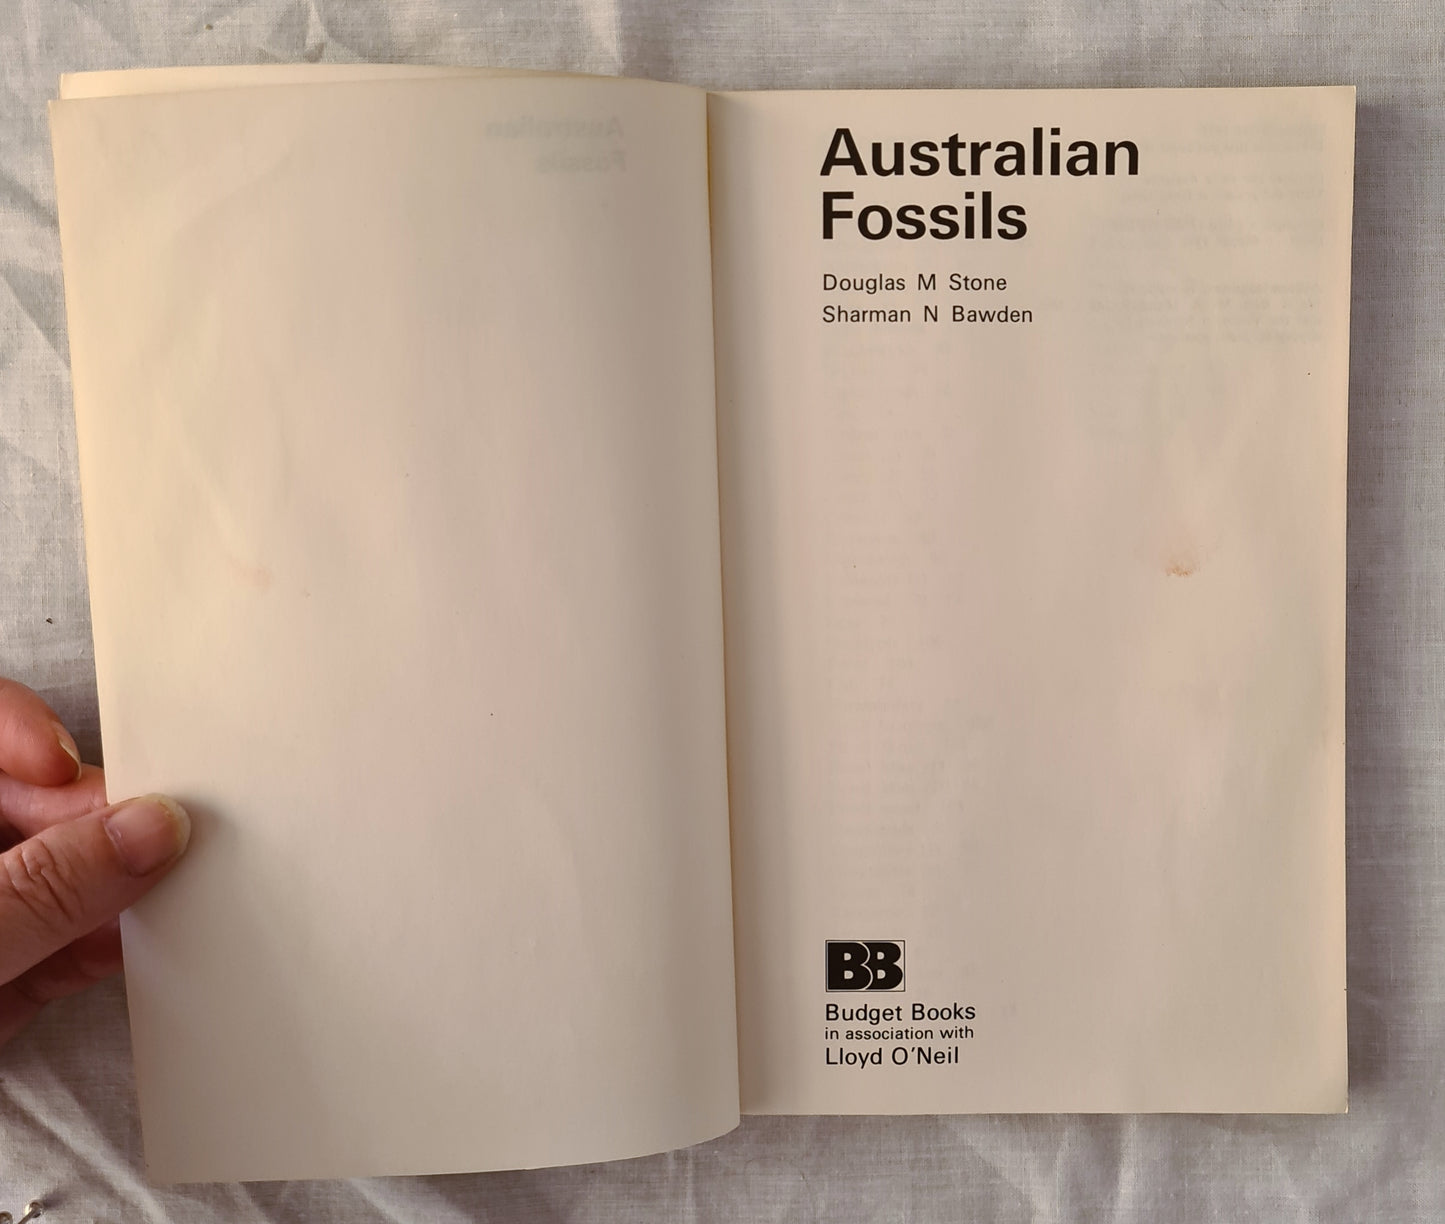 Australian Fossils by Douglas M Sone and Sharman N Bawden